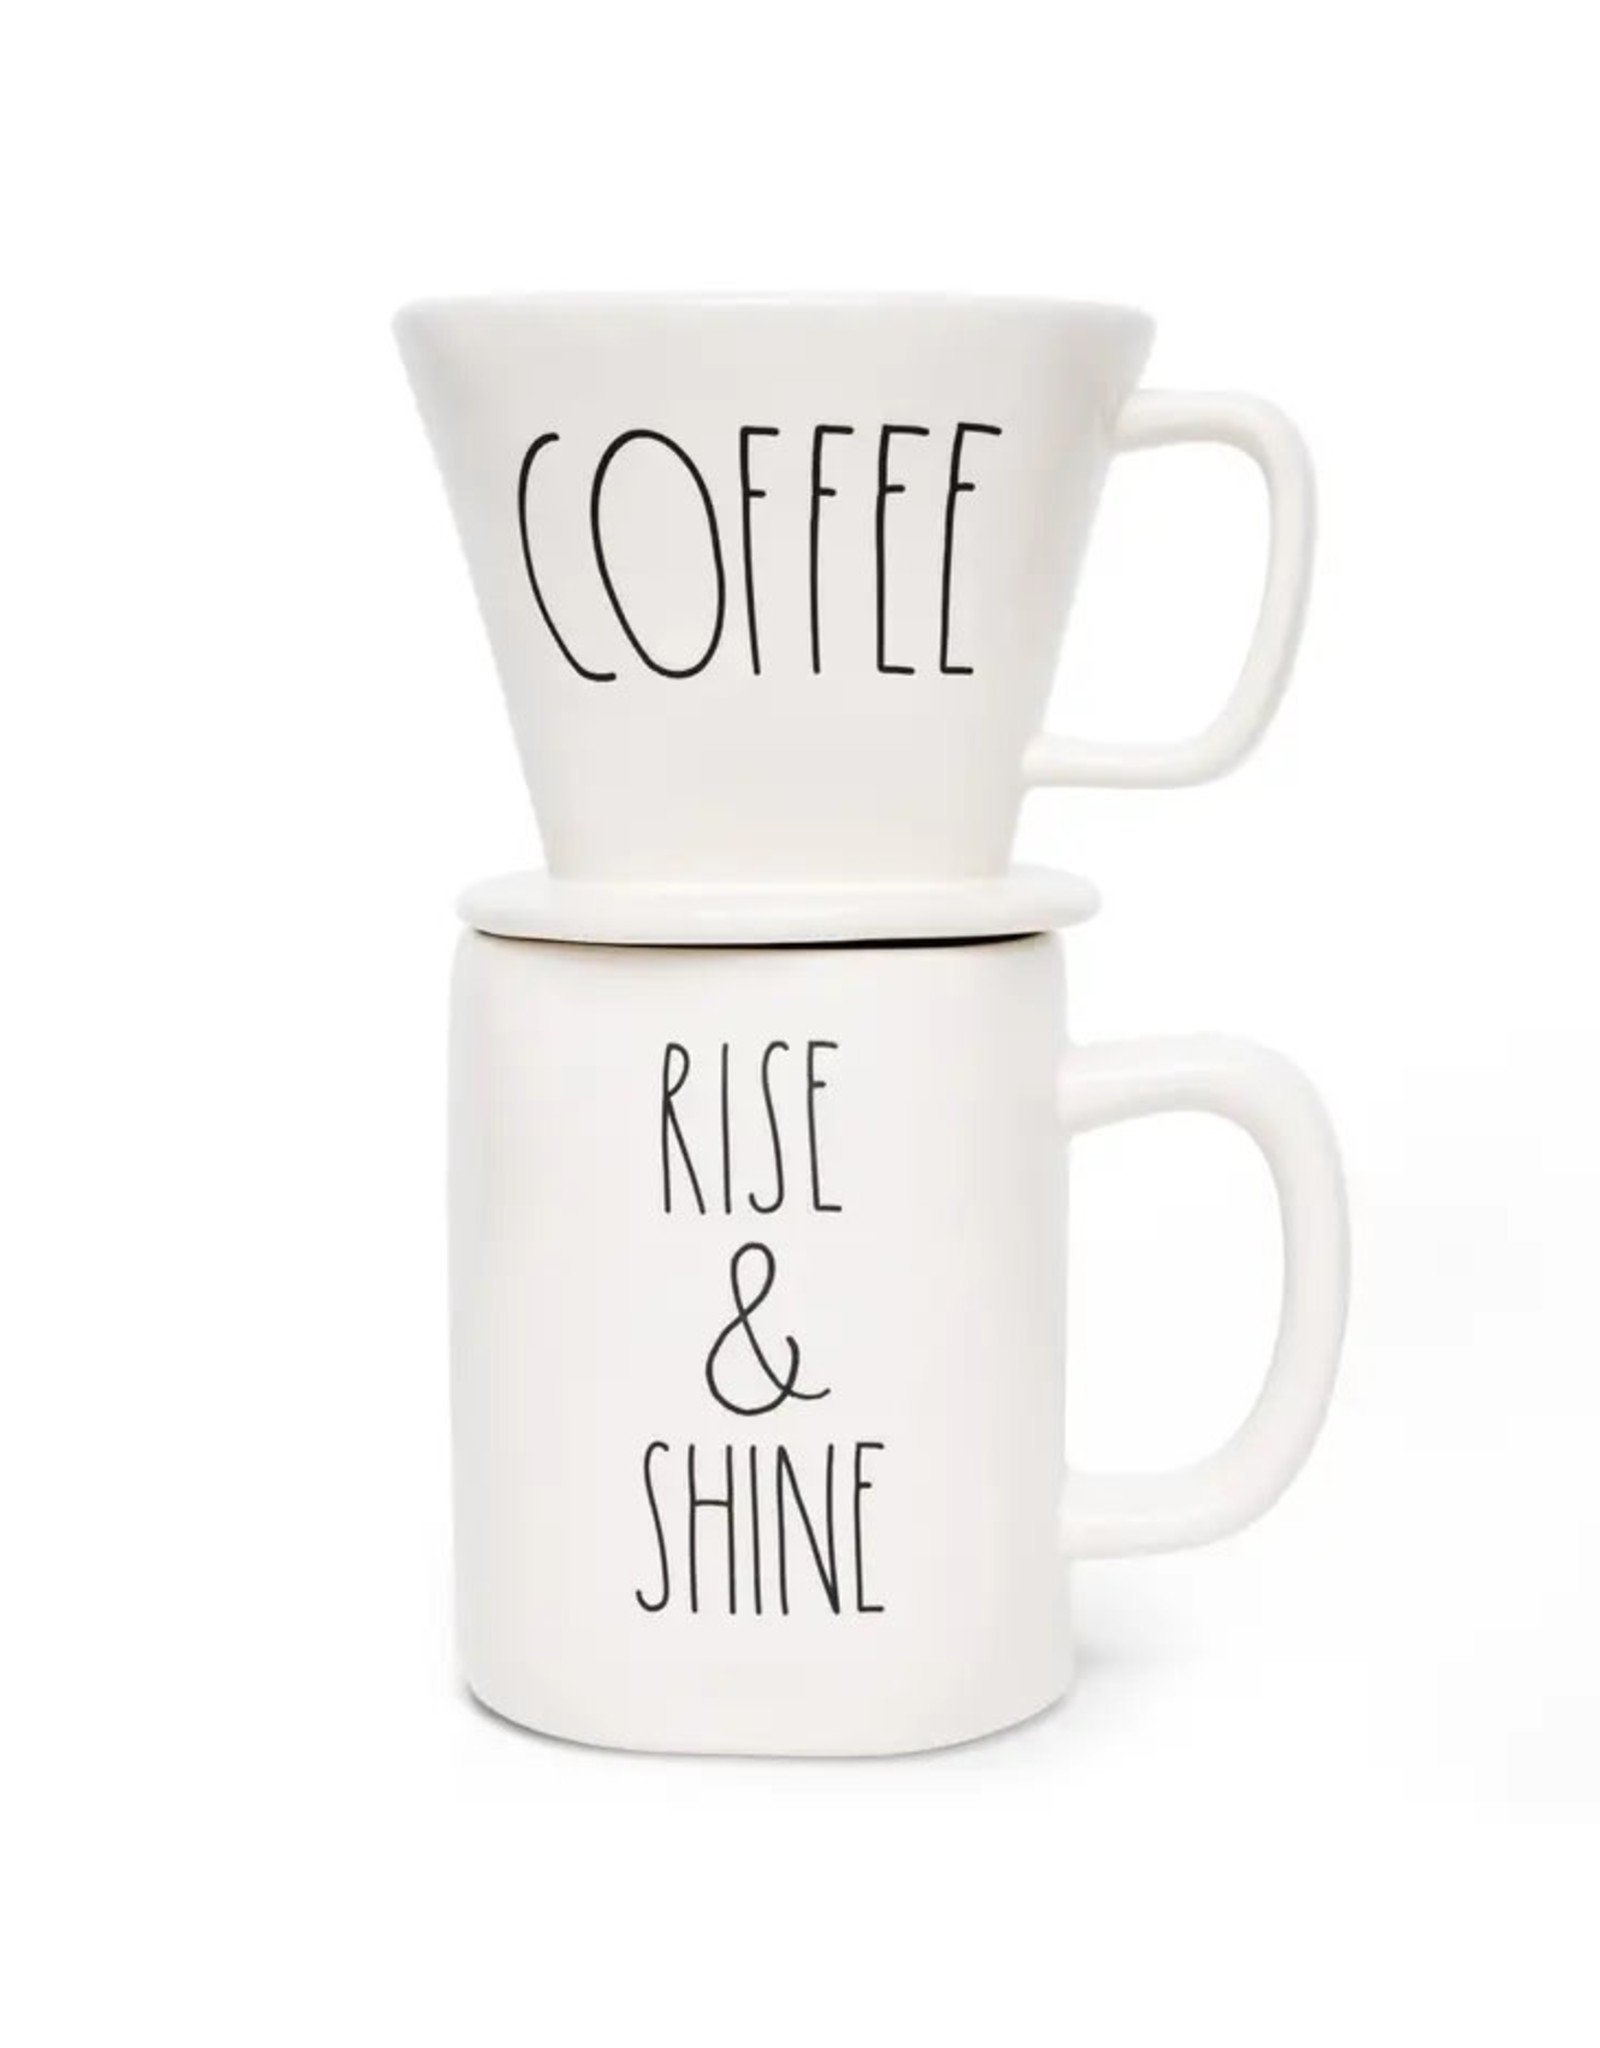 Rae Dunn Artisan COFFEE Drip and RISE & SHINE Mug Set - Phillips Trading